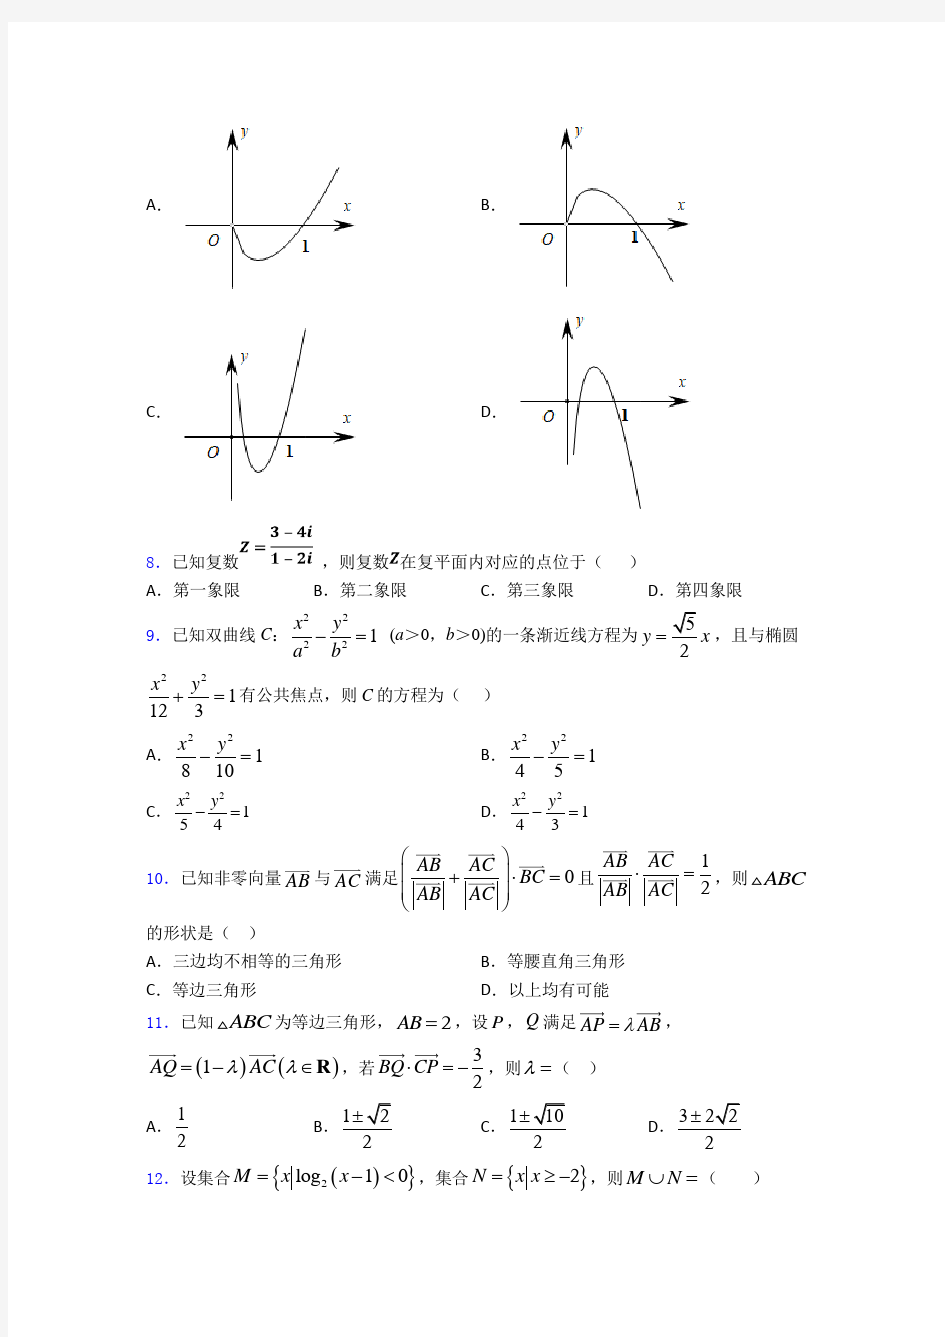 【典型题】数学高考模拟试题(带答案)